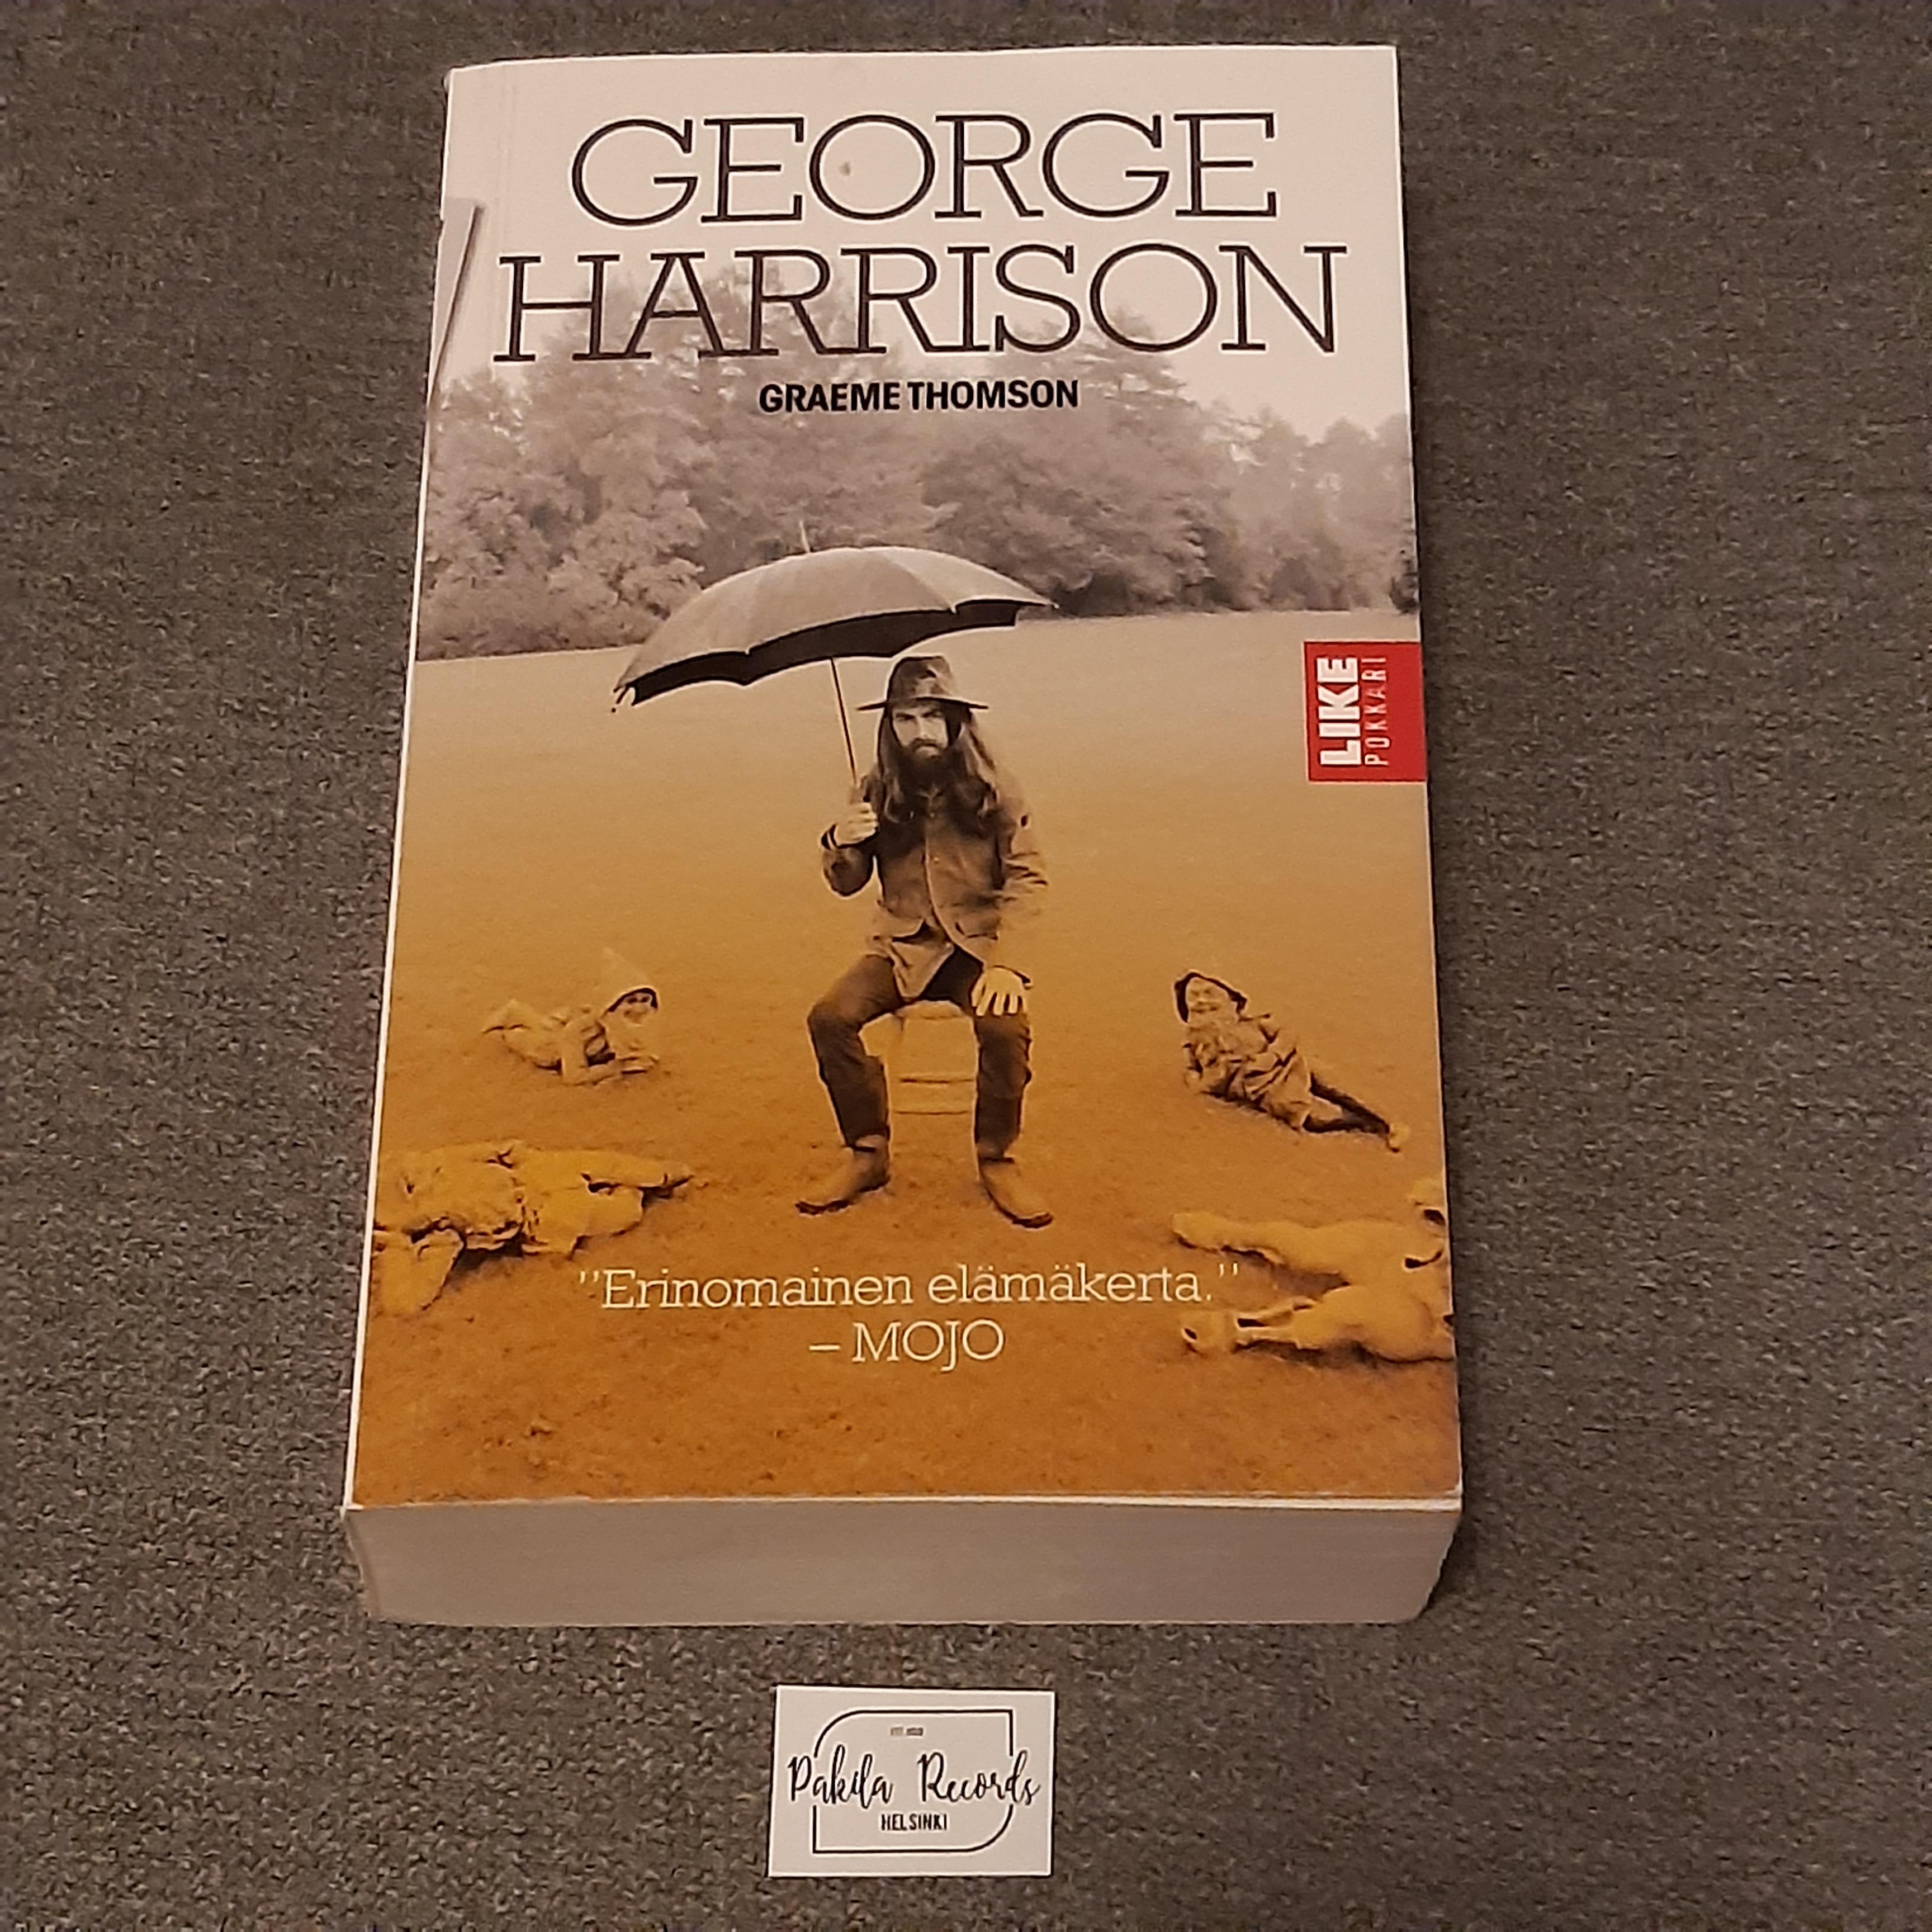 George Harrison - Graeme Thomson - Kirja (käytetty)